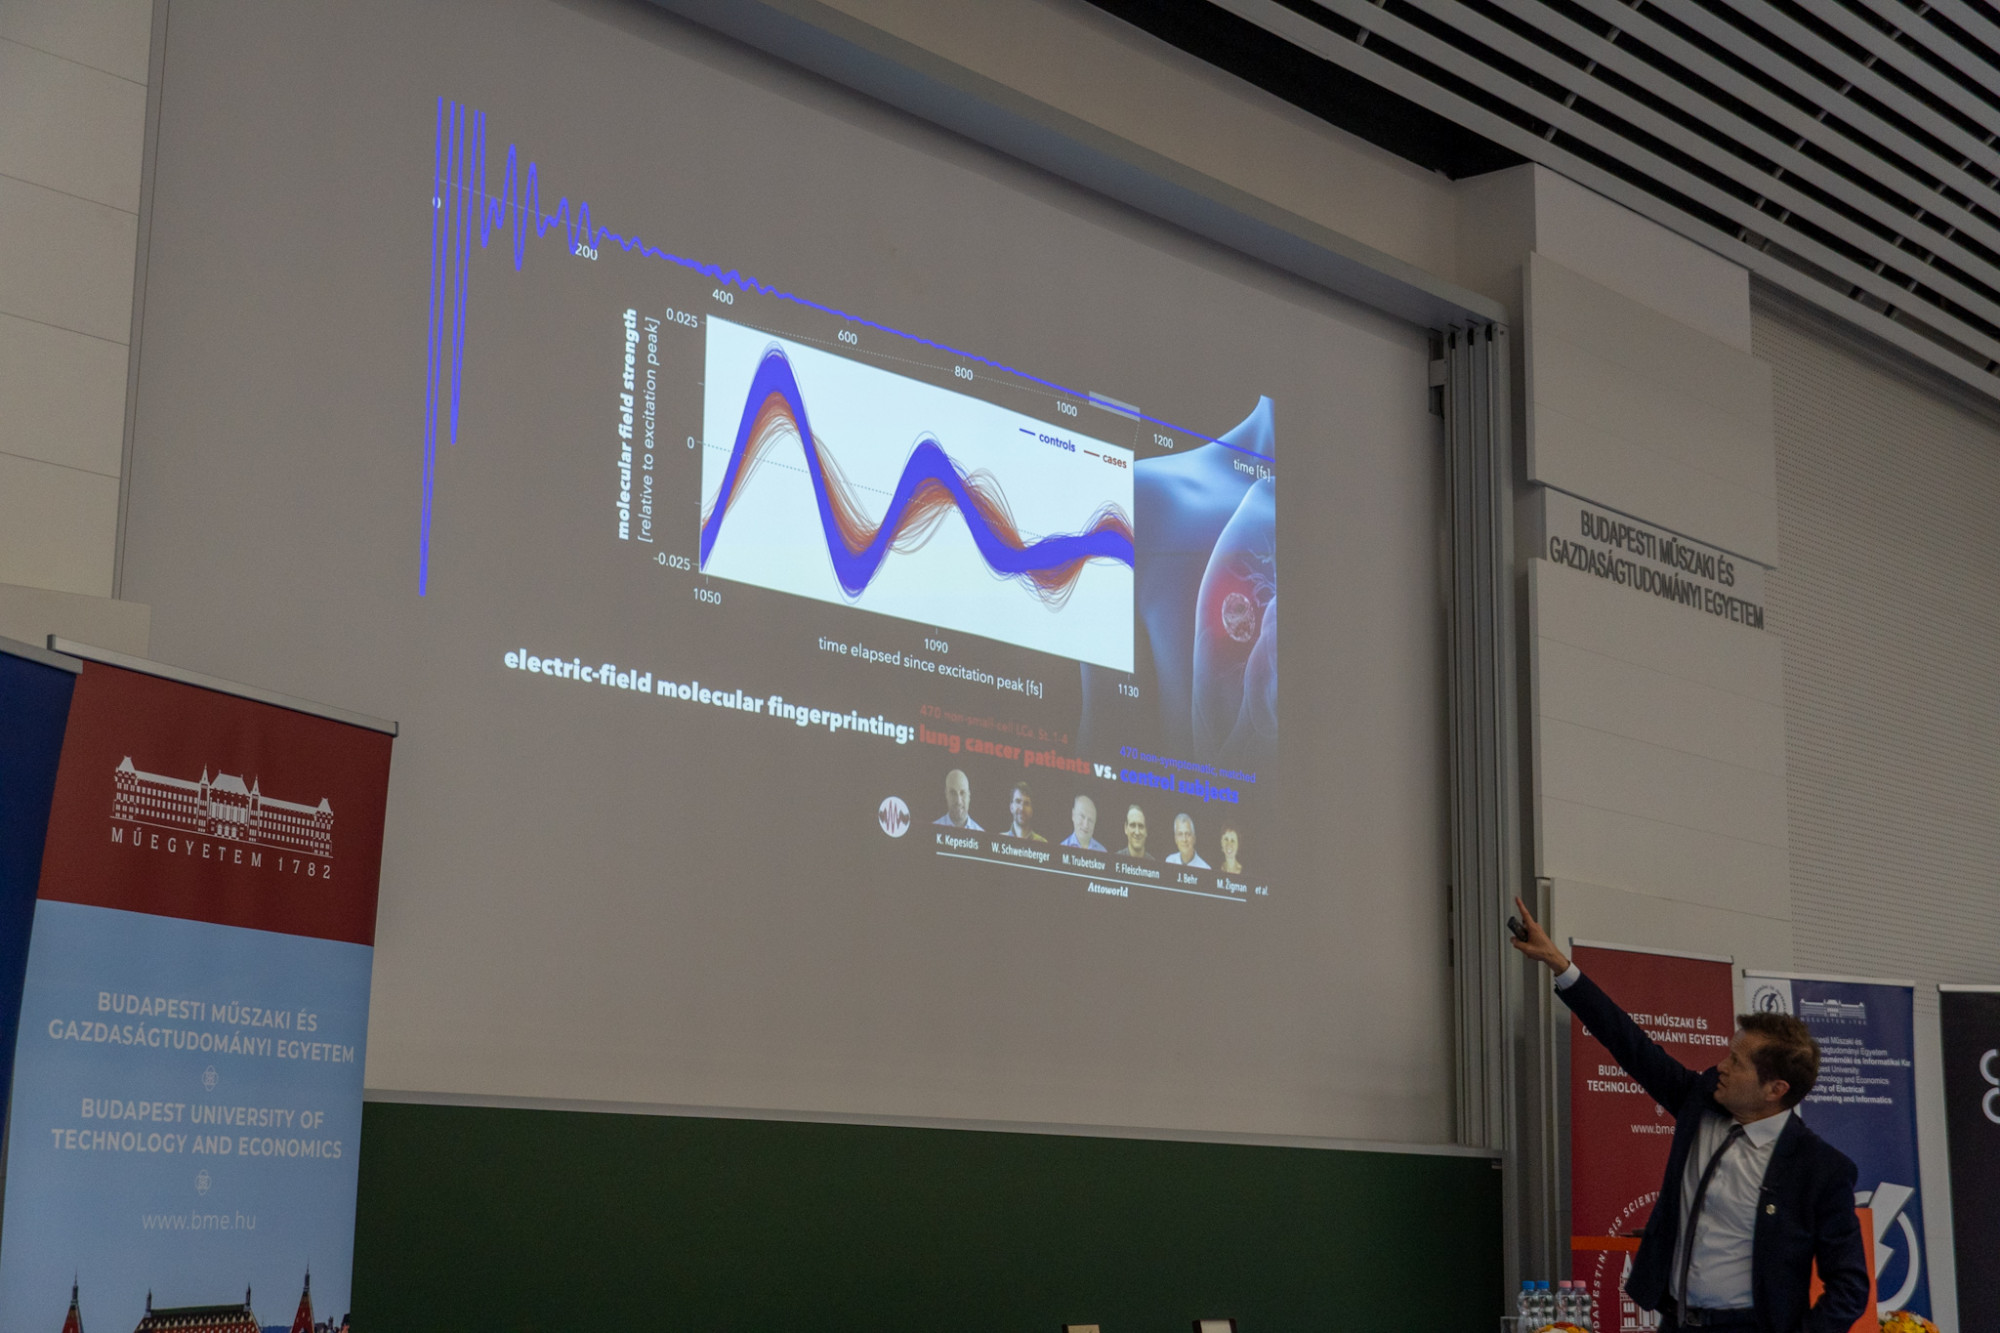 Krausz Ferenc Nobel-díjas fizikus éppen azt az ábrát mutatja előadásában, ahol a normál referenciához képest (kékkel) eltér a tüdőrákos betegek (pirossal) vérének molekuláris ujjlenyomata